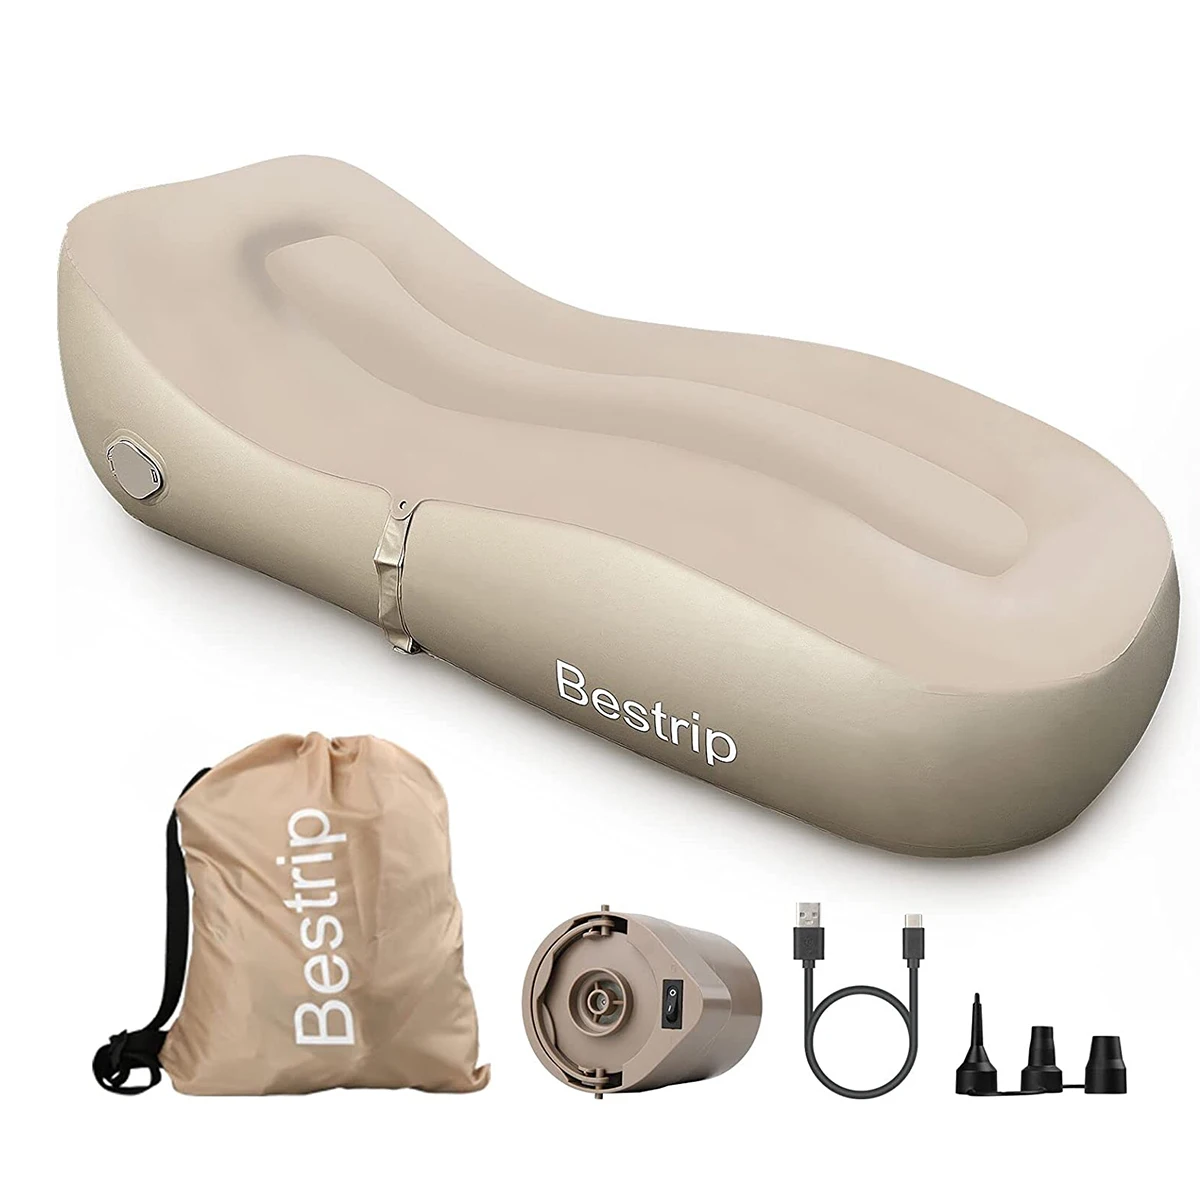 Bestrip-Sofá inflável, colchão de ar, sofá-cama, cadeira do ar, acampamento, piquenique, mobília ao ar livre, quintal, praia, curso